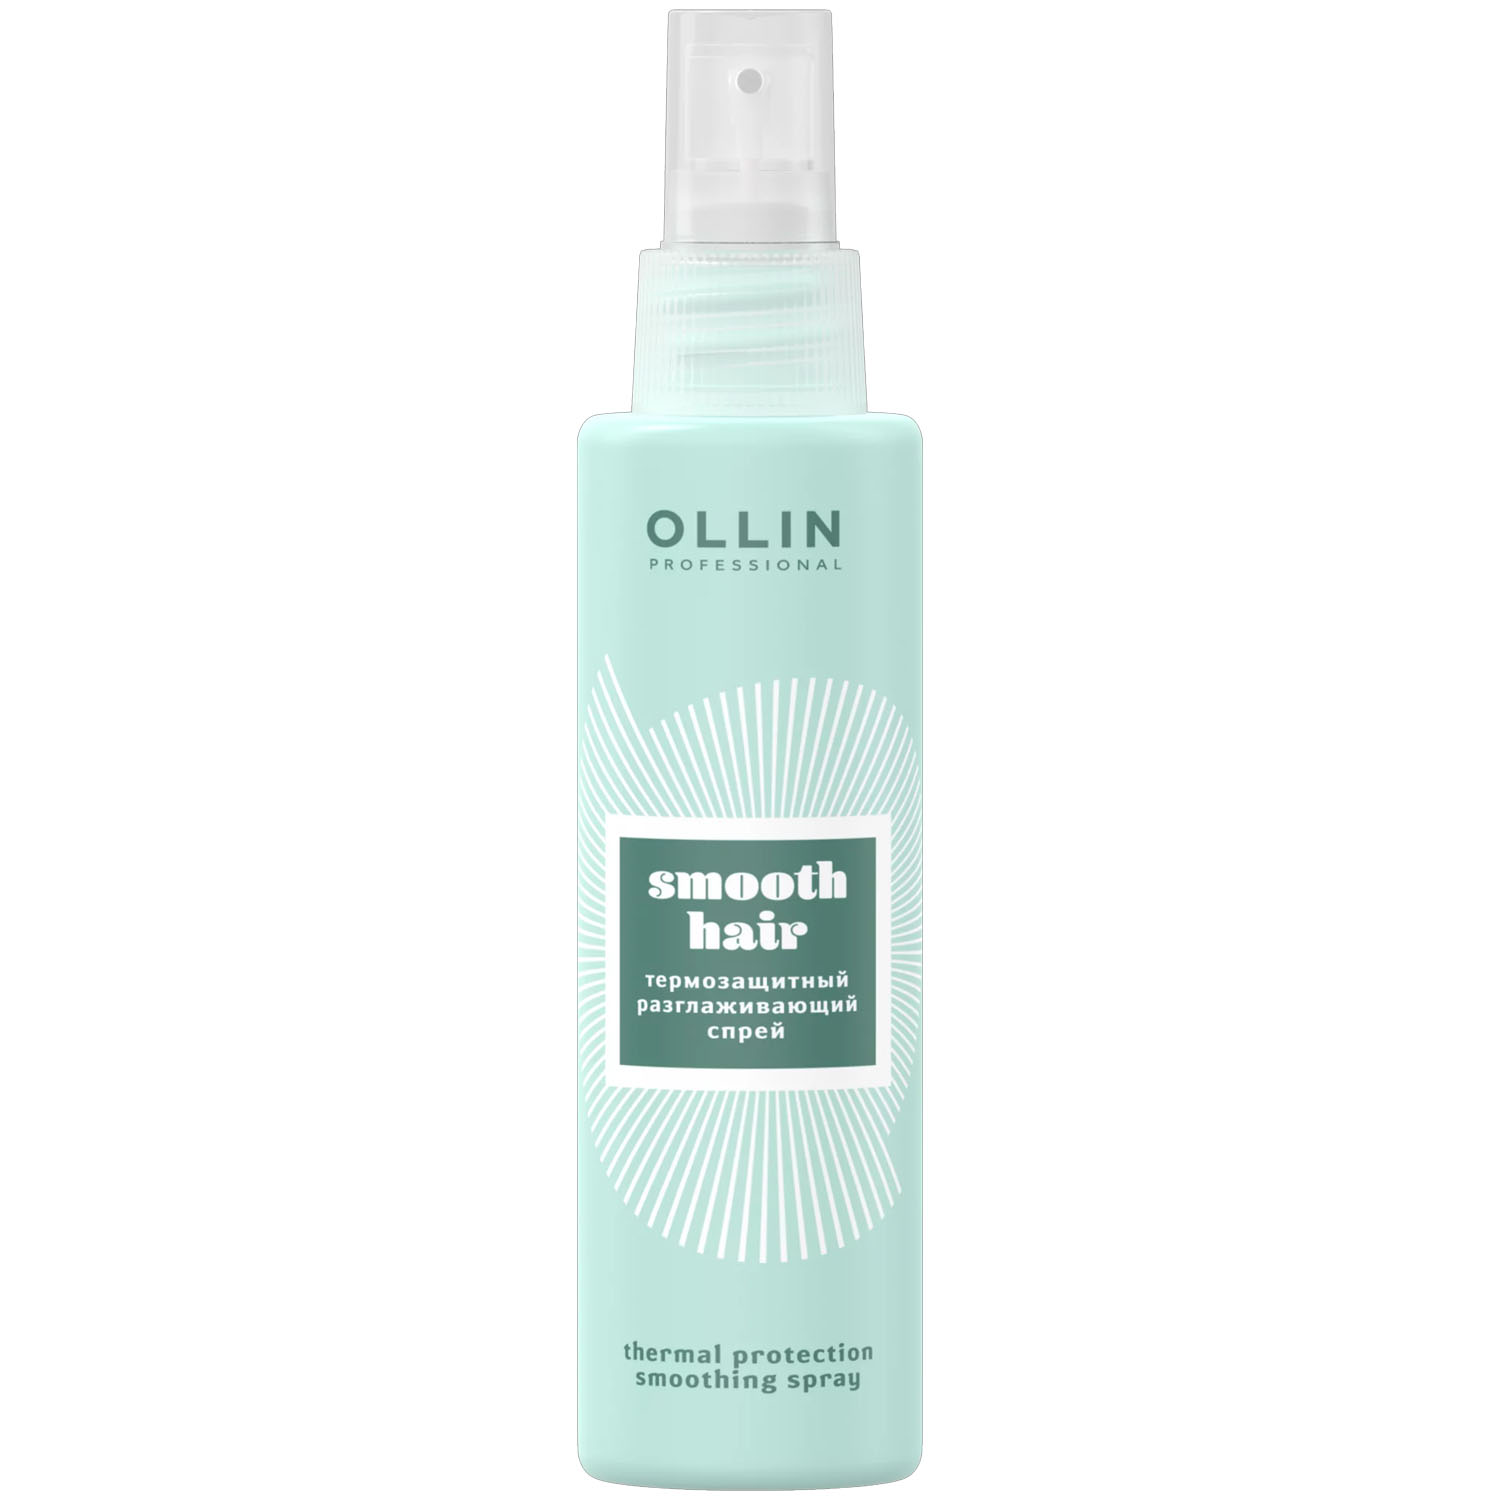 Ollin Professional Термозащитный разглаживающий спрей, 150 мл (Ollin Professional, Curl & Smooth Hair) термозащитный разглаживающий спрей для волос ollin professional smooth hair 150мл